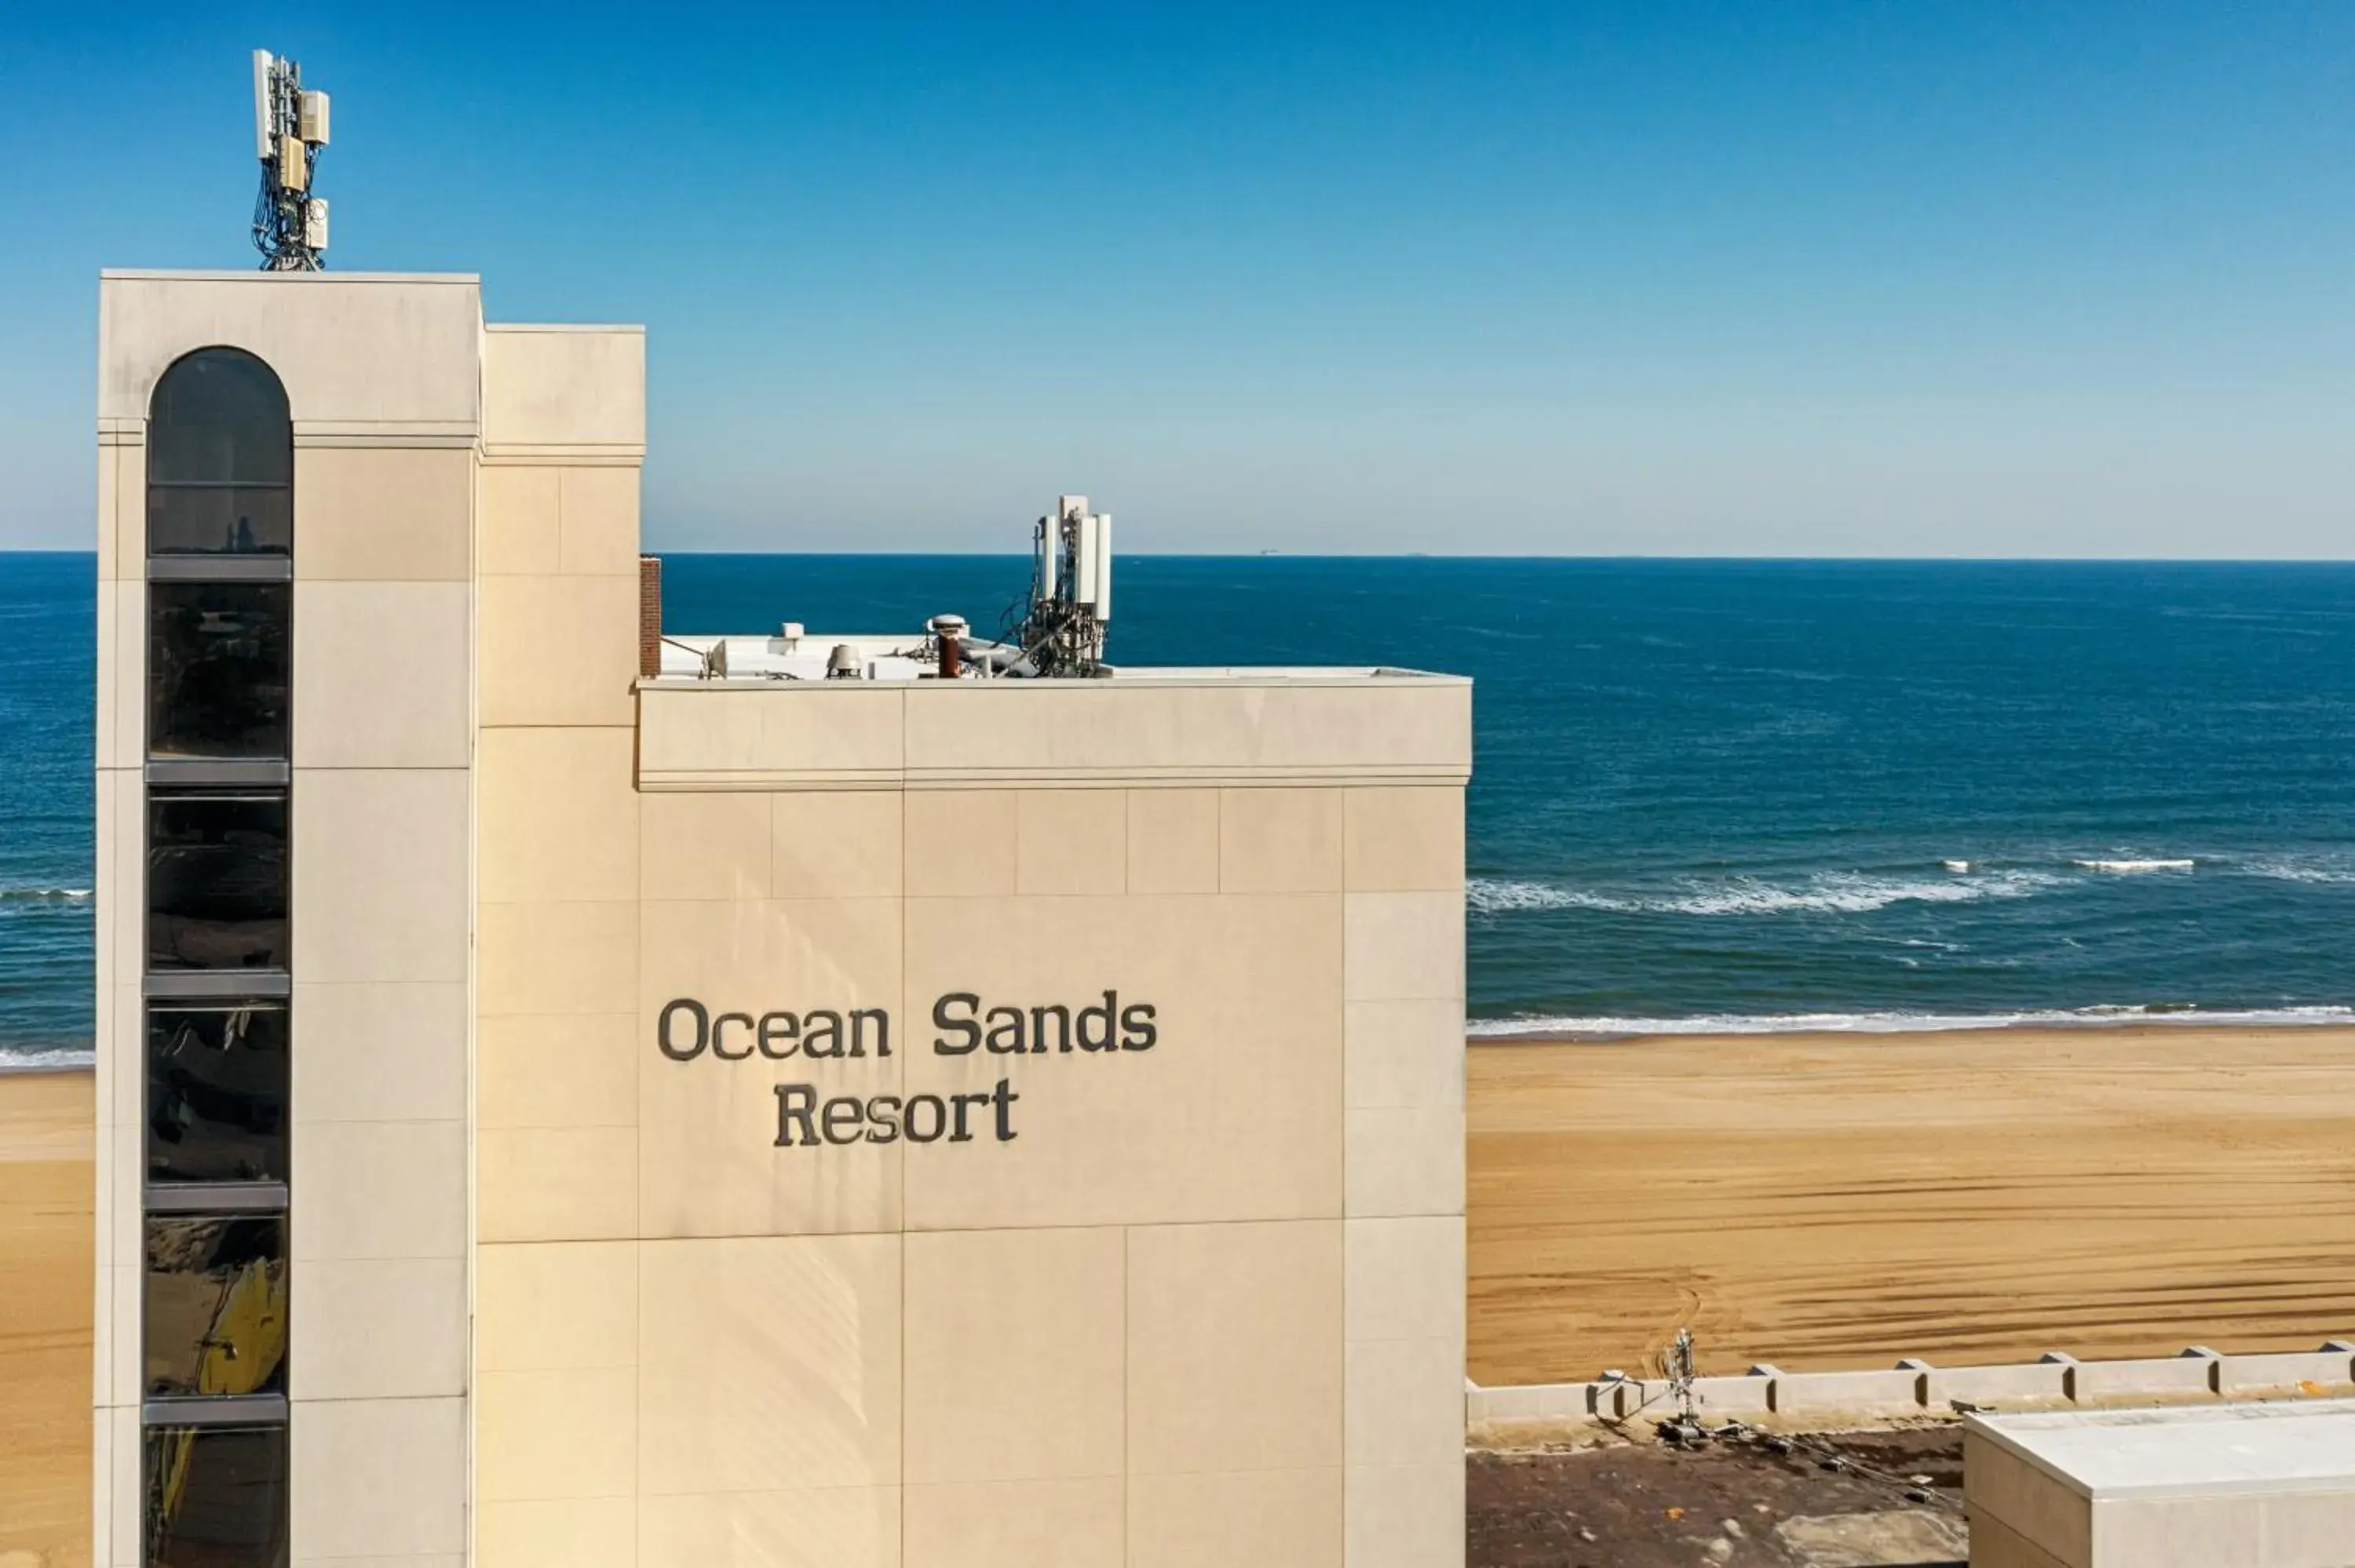 Property logo or sign in Ocean Sands Resort